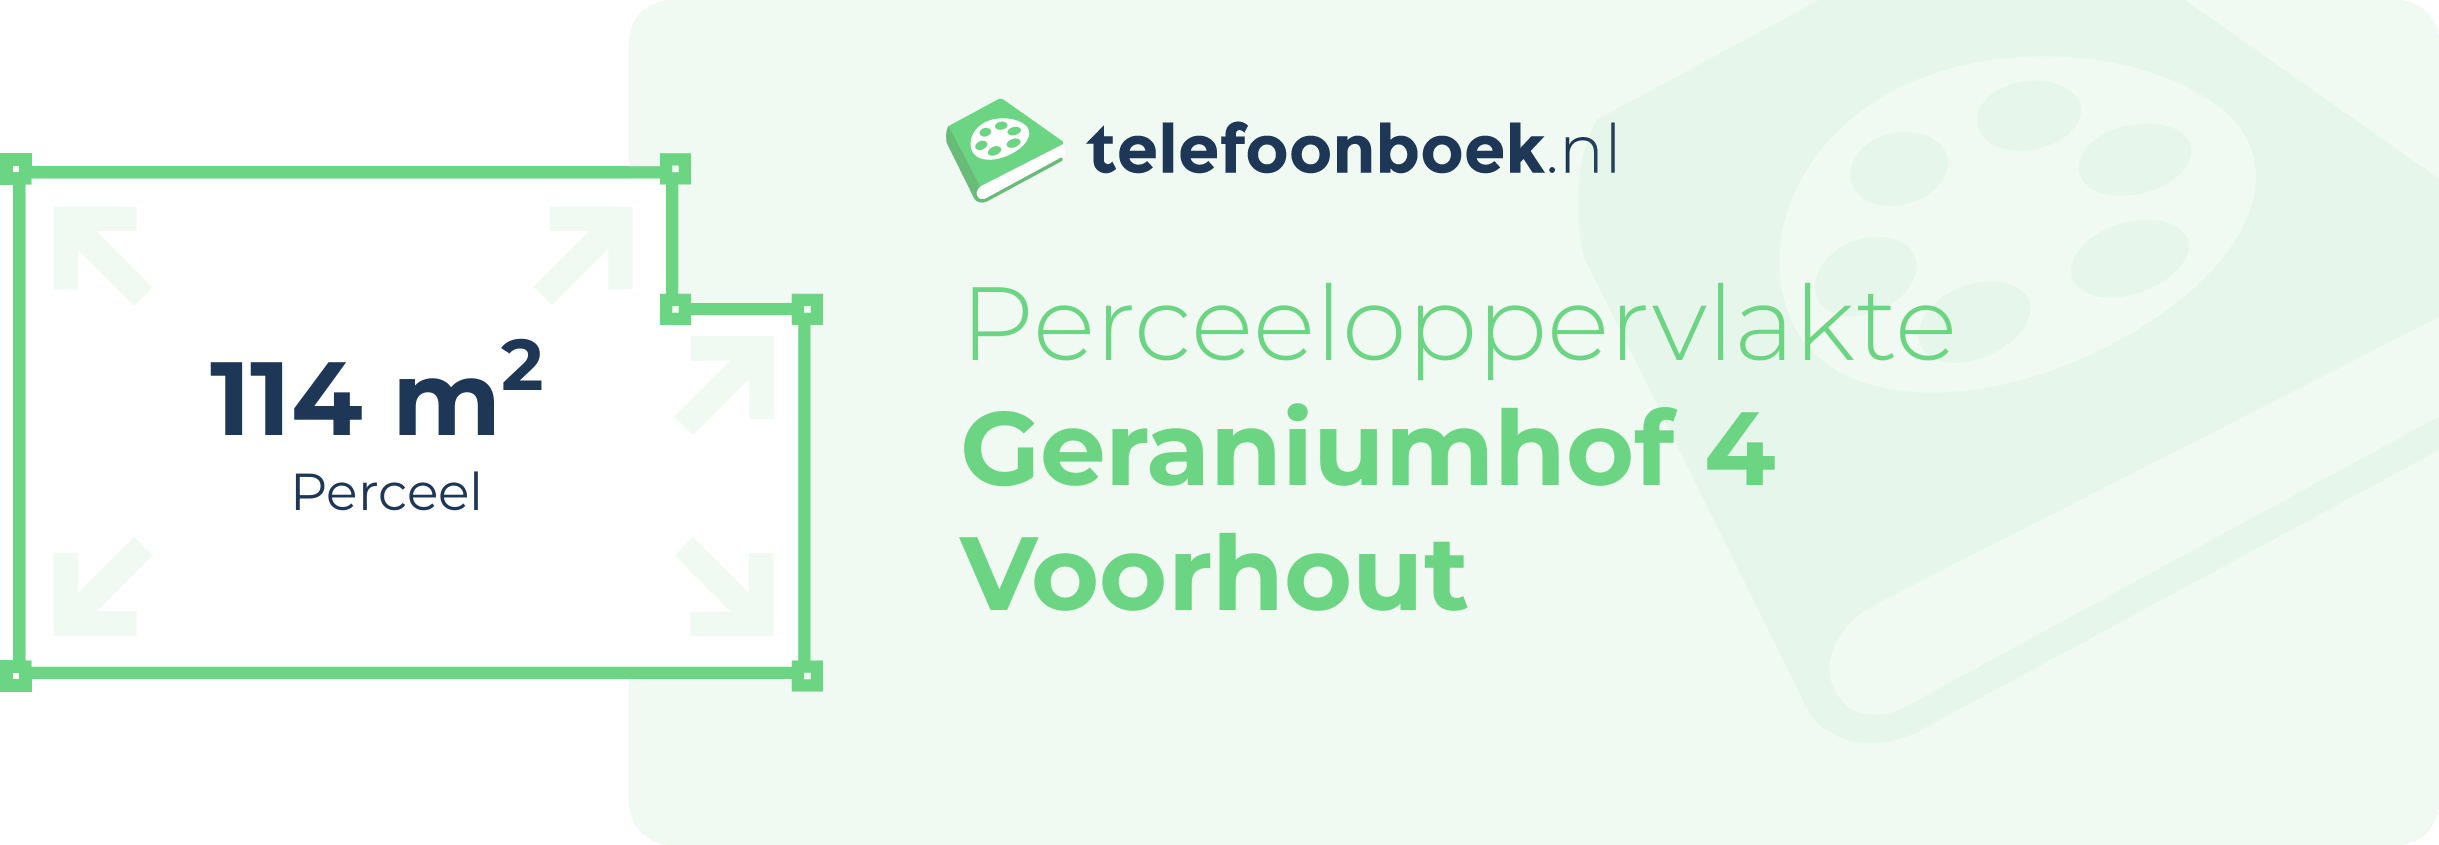 Perceeloppervlakte Geraniumhof 4 Voorhout